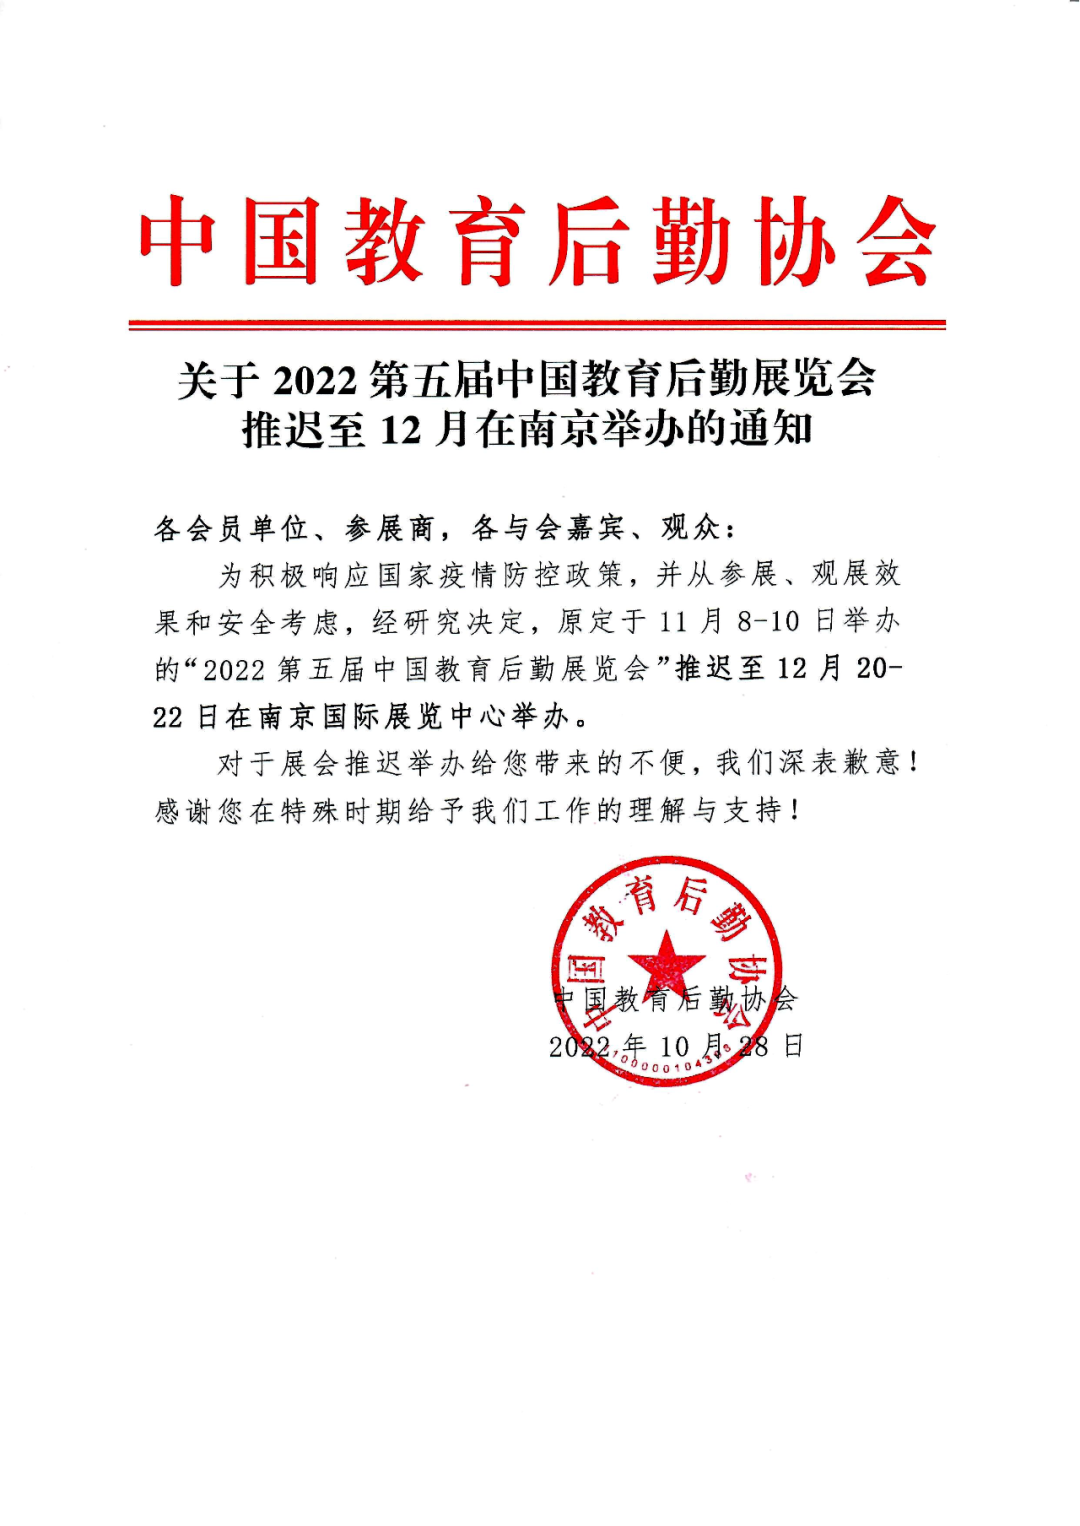 关于2022第五届中国教育后勤展览会推迟至12月在南京举办的通知